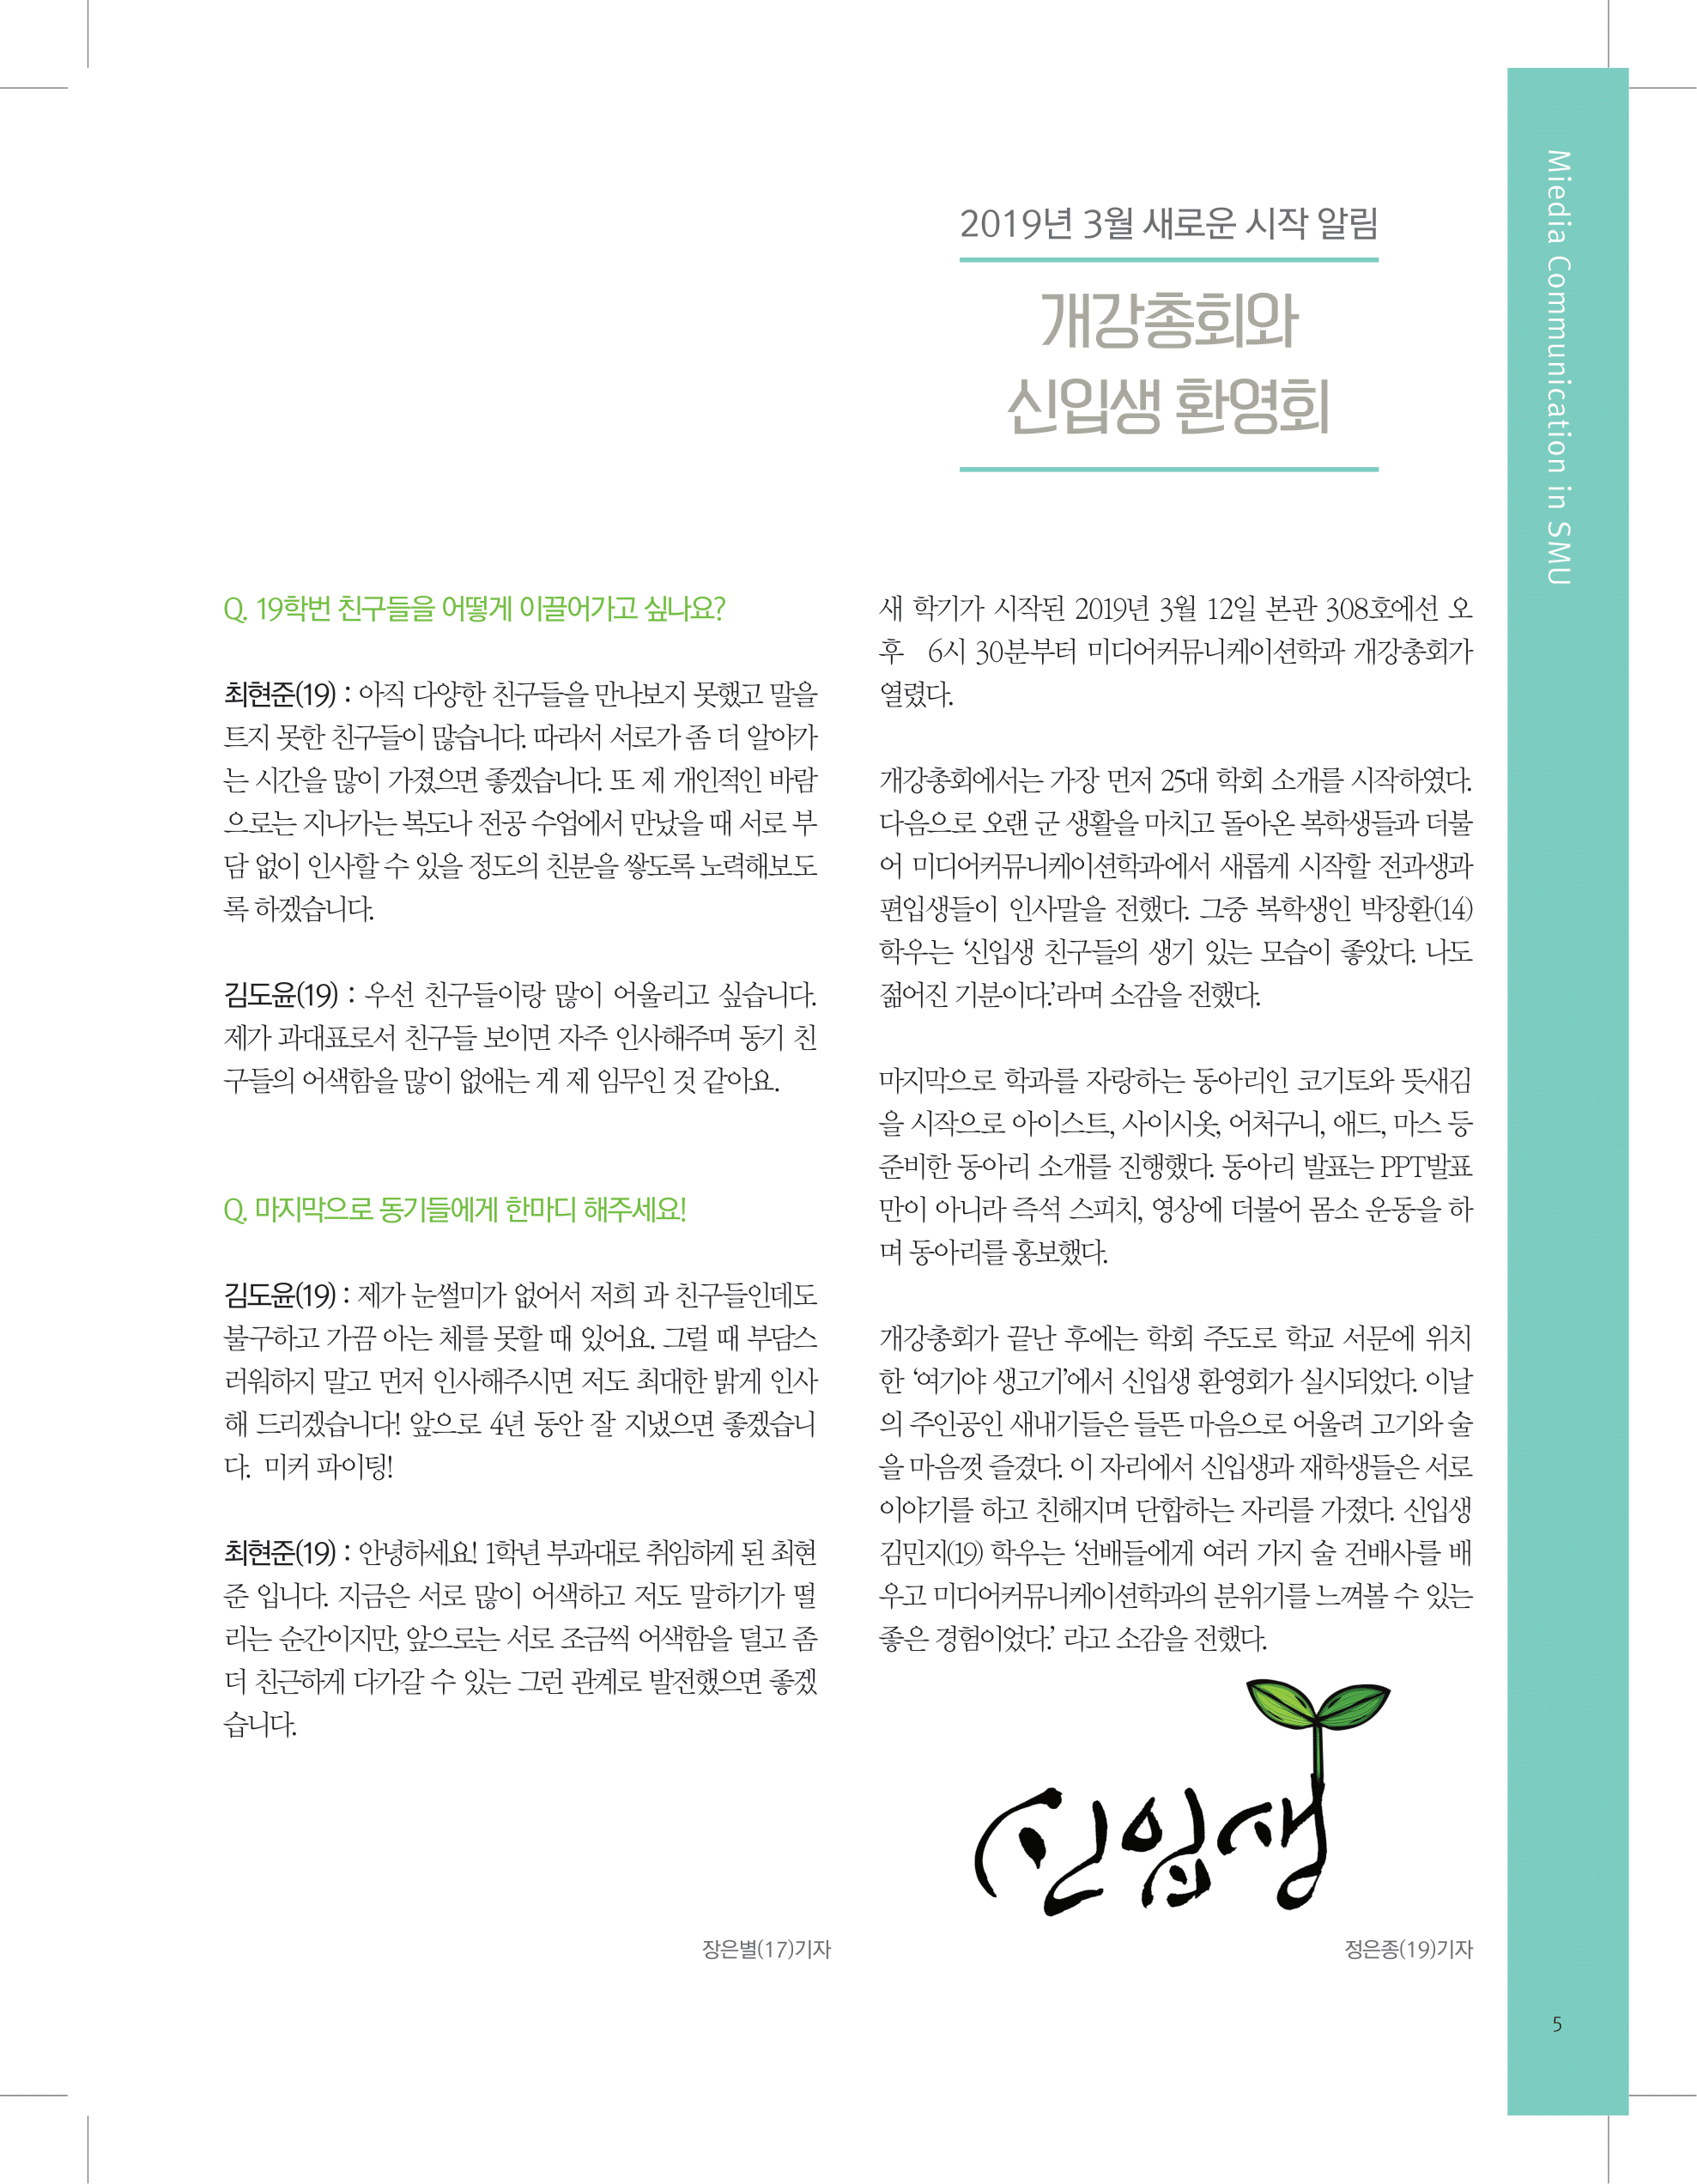 뜻새김 신문 73호 5